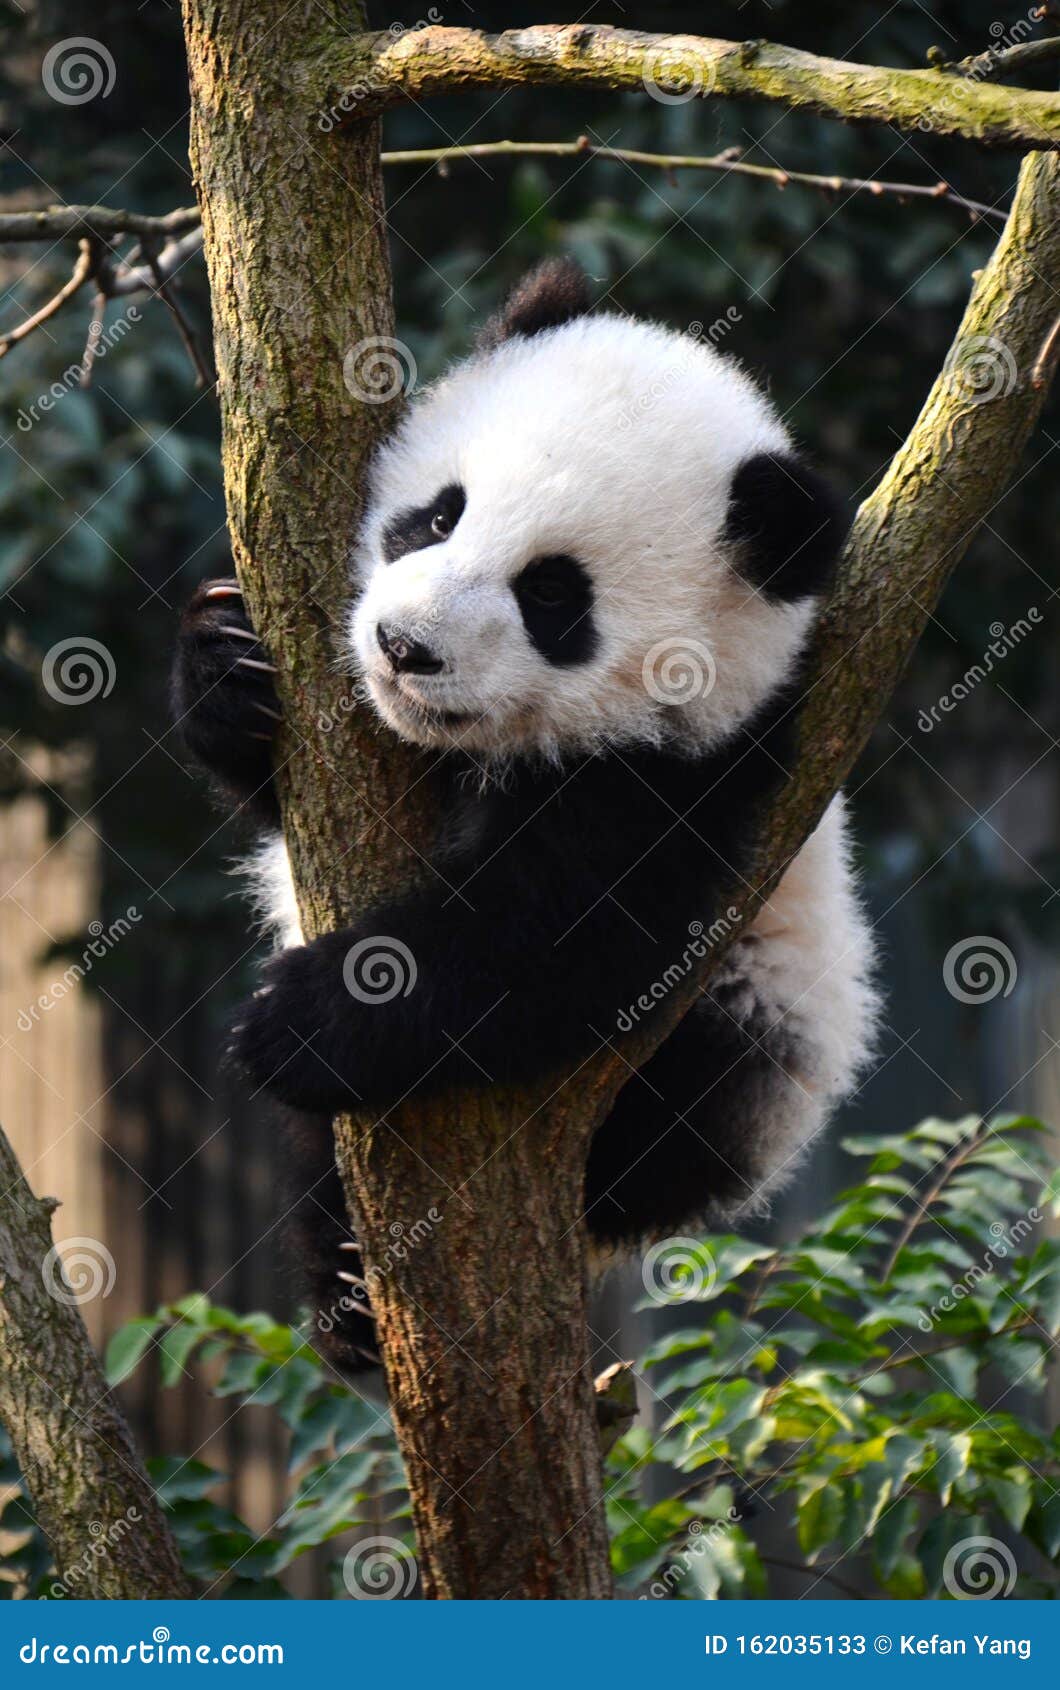 Cute panda kung fu panda Ailuropoda melanoleuca proteção animal fauna selvagem
Chengdu, Sichuan, Tesouro Nacional Chinês, Urso de Panda, Urso de Bambu, Cão de Prata, Caverna, Du Dong, Zhiyi, Yi, Leopardo, Homem de Ferro